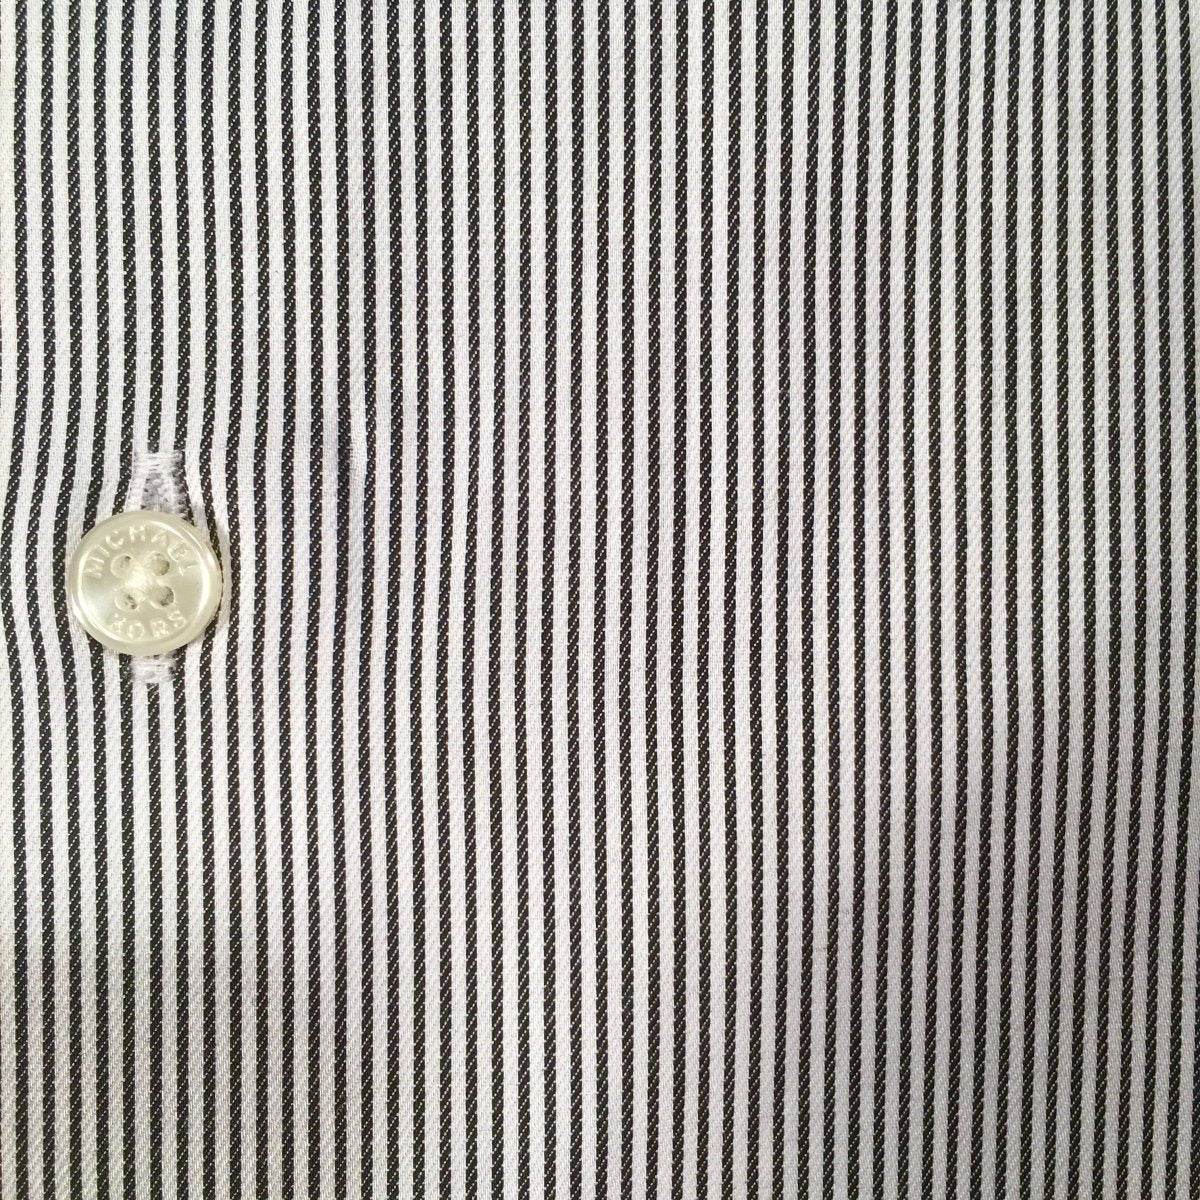 Michael Kors Boys Cotton Charcoal/White Stripe Dress Shirt Z0332 Dress Shirts Michael Kors 